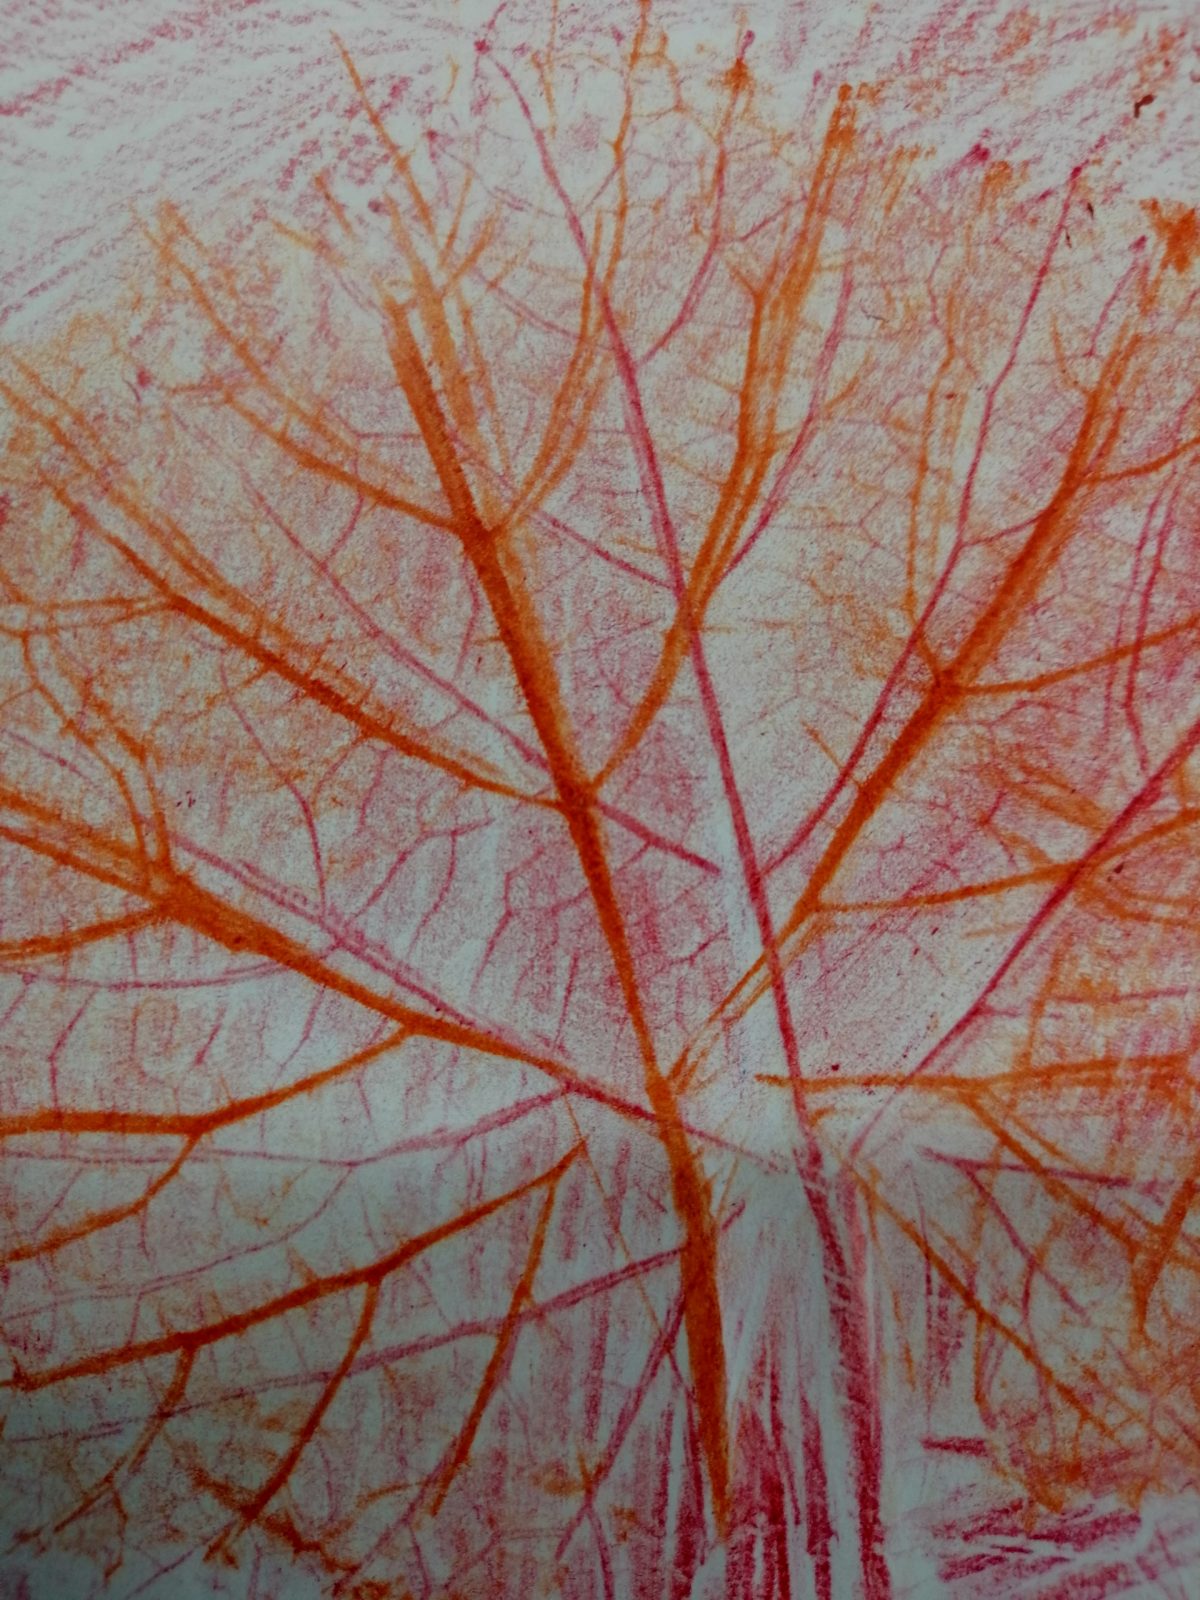 Kompozycja plastyczna struktur jesiennych liści w układzie abstrakcyjnym. Praca wykonana w technice frotażu z użyciem barw ciepłych.